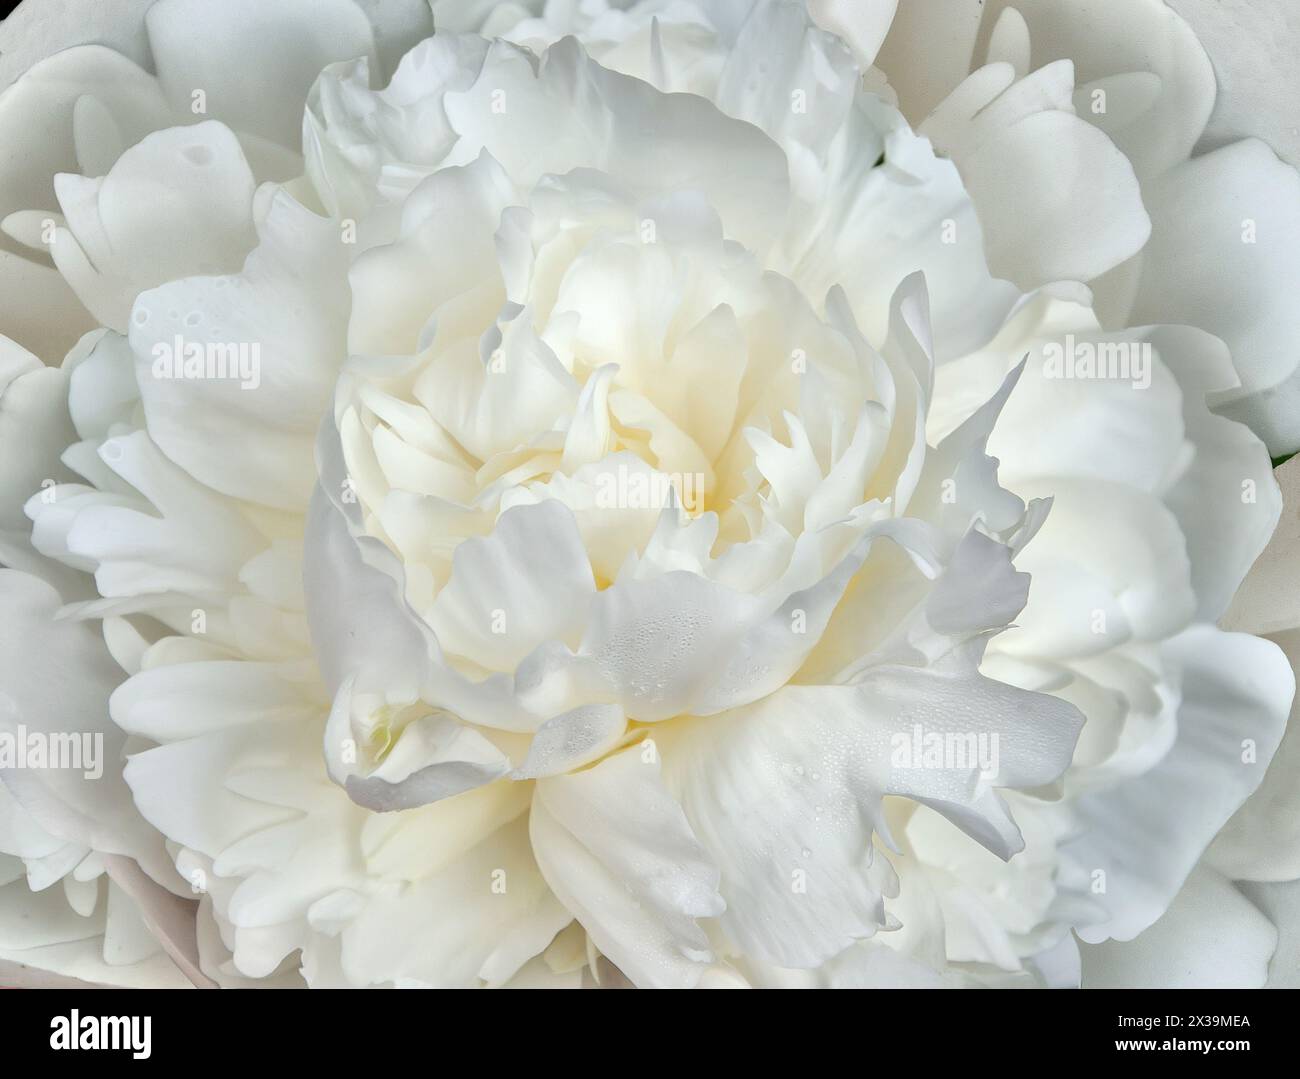 Incredibile bellezza del fiore di peonia bianca - sfondo macro, floreale estivo o festivo. Splendido fiore di peonia doppio con gocce d'acqua su delicati petali. Essere Foto Stock